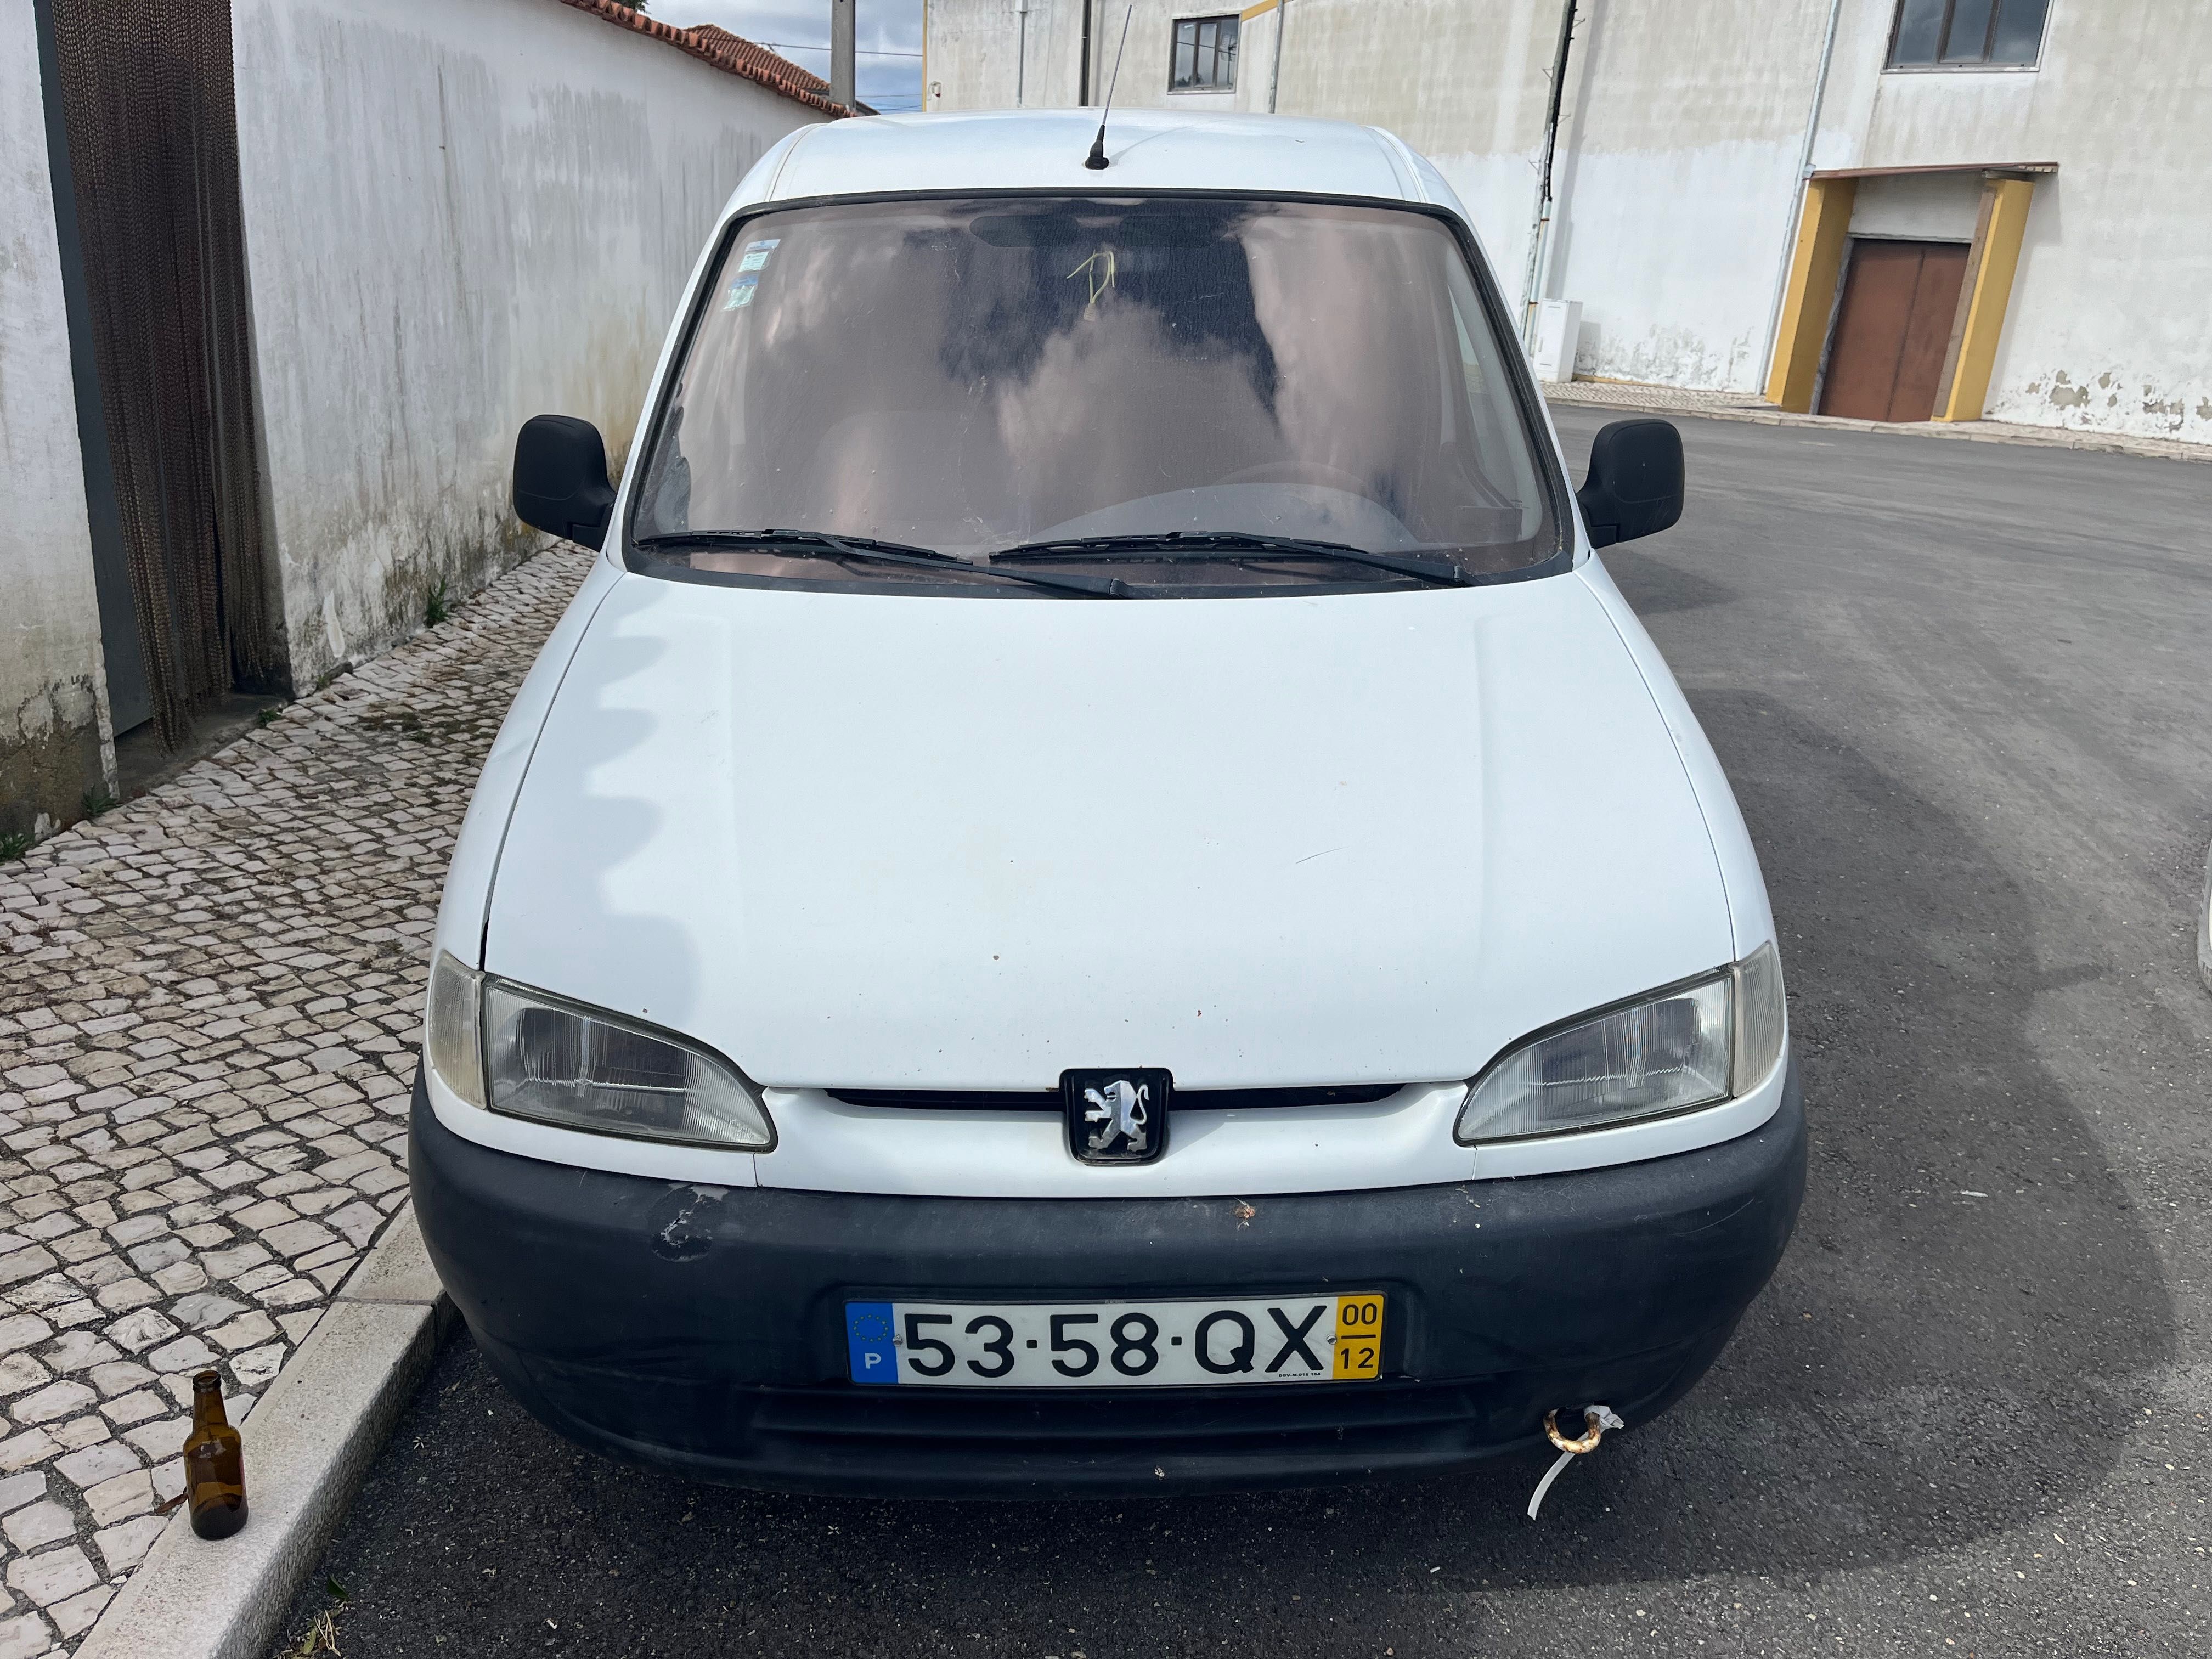 Peugeot Partner 1.9